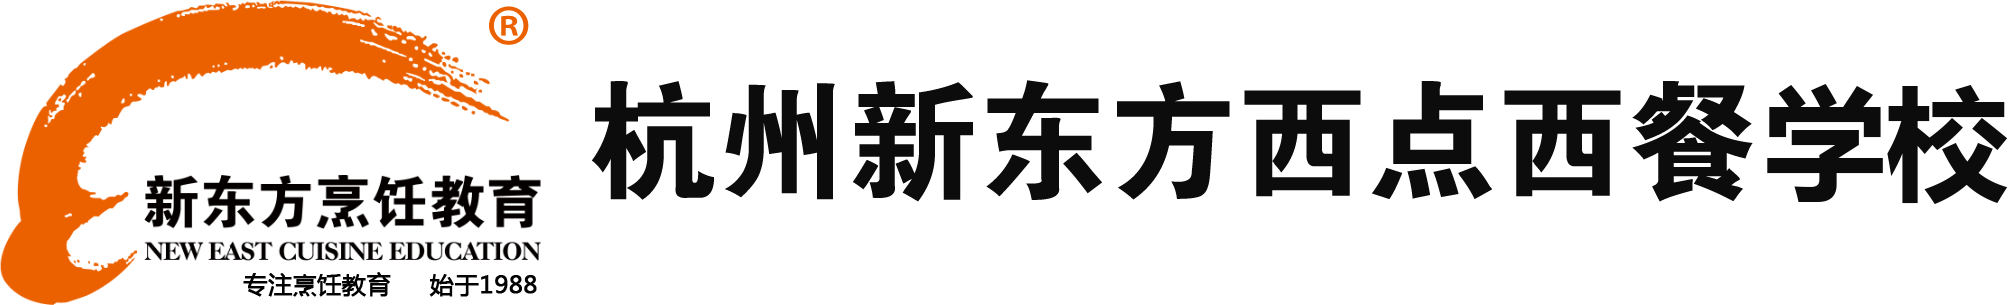 杭州西点西餐学院官网logo